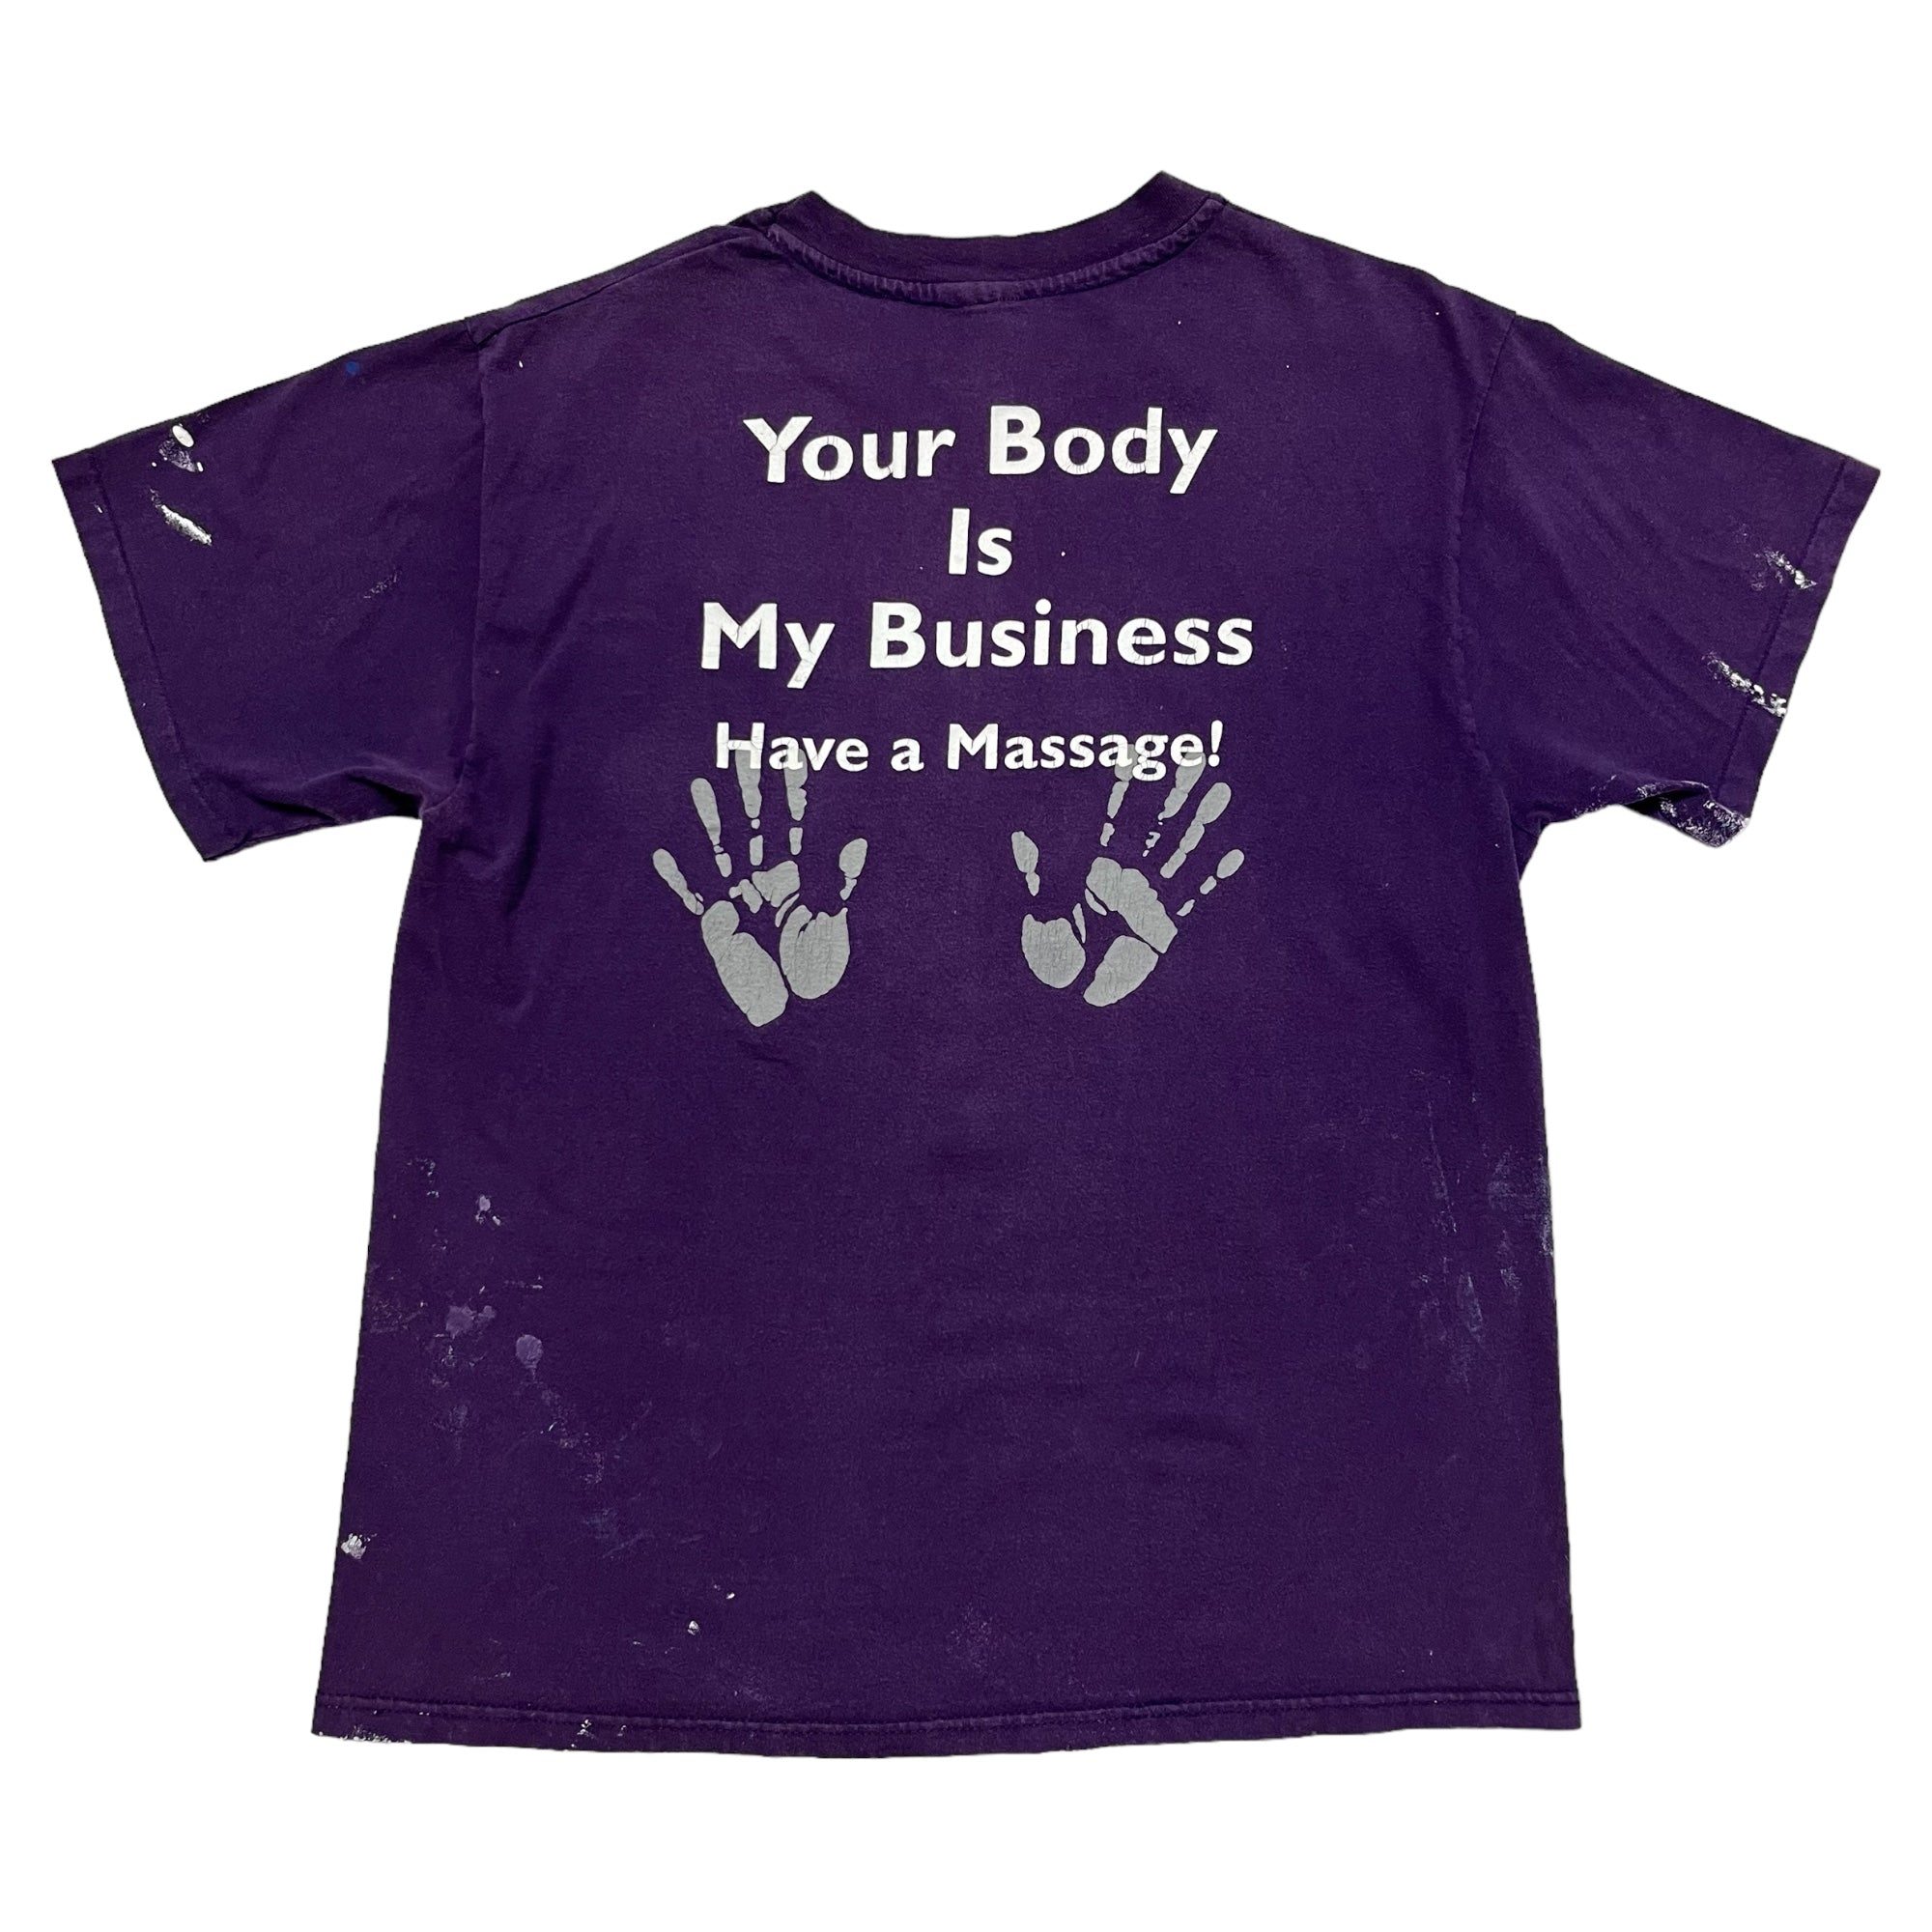 1990s Biotone Massage Oil Painter T-Shirt - Purple - L/XL